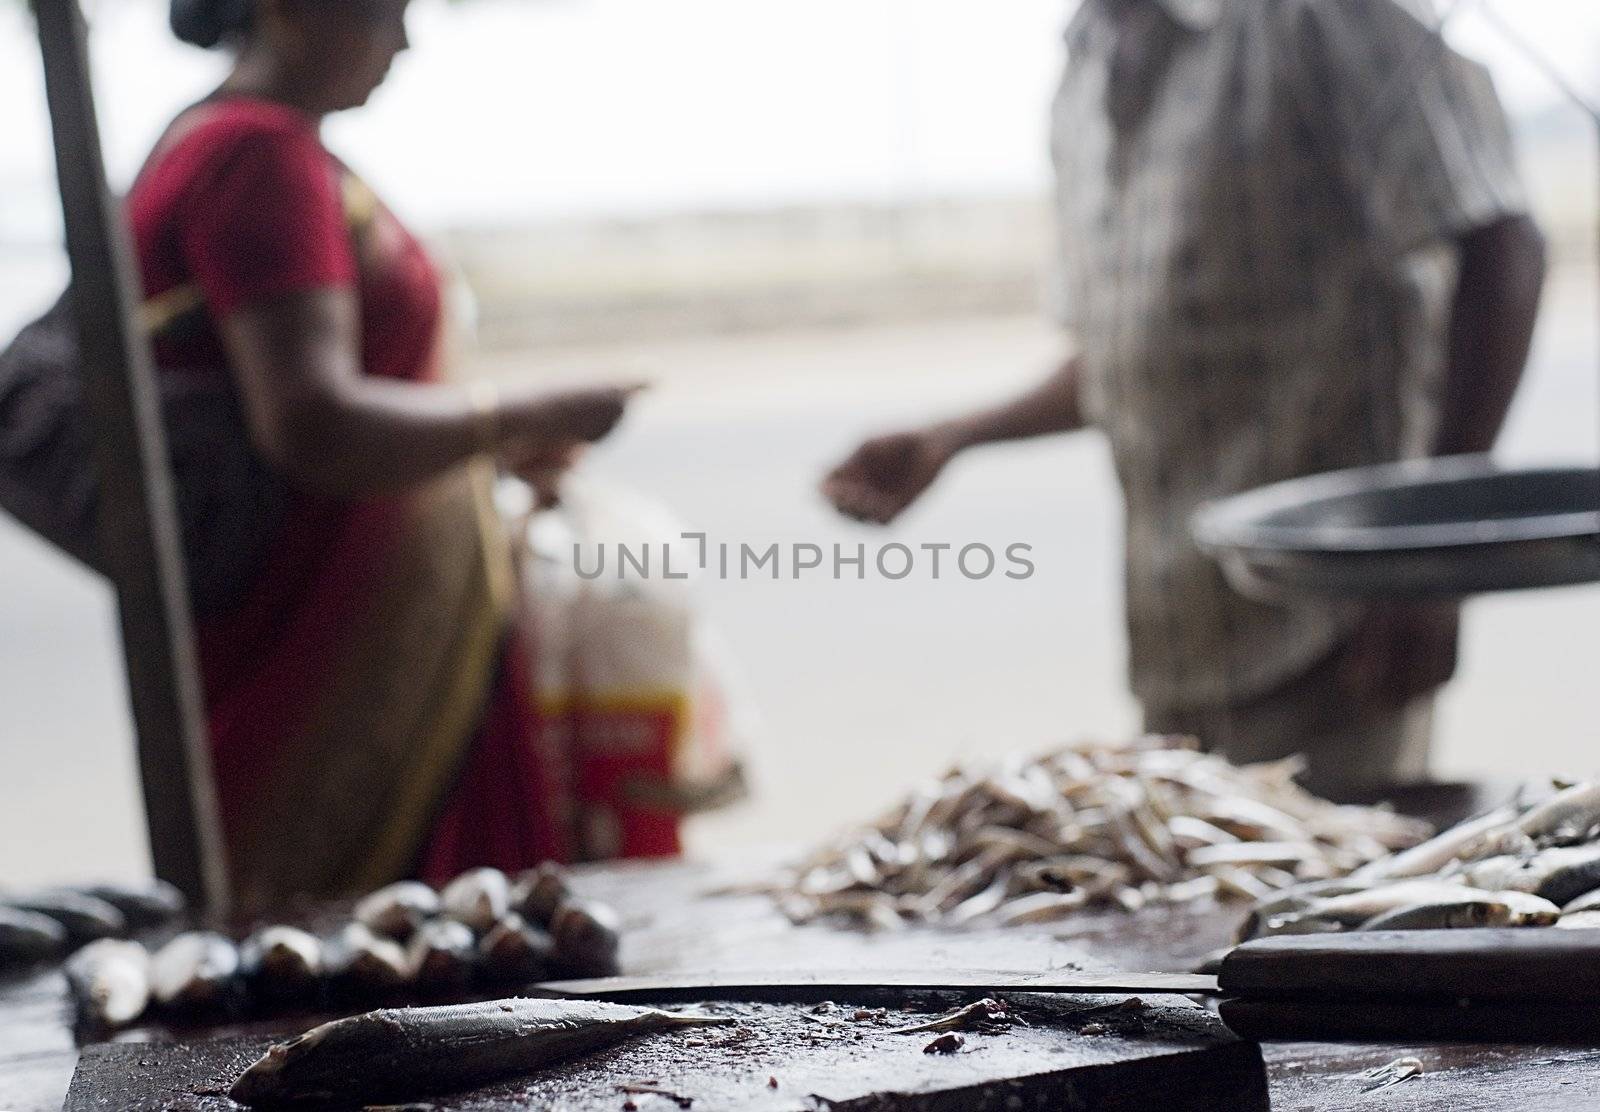 On the street fish market in Sri Lanka